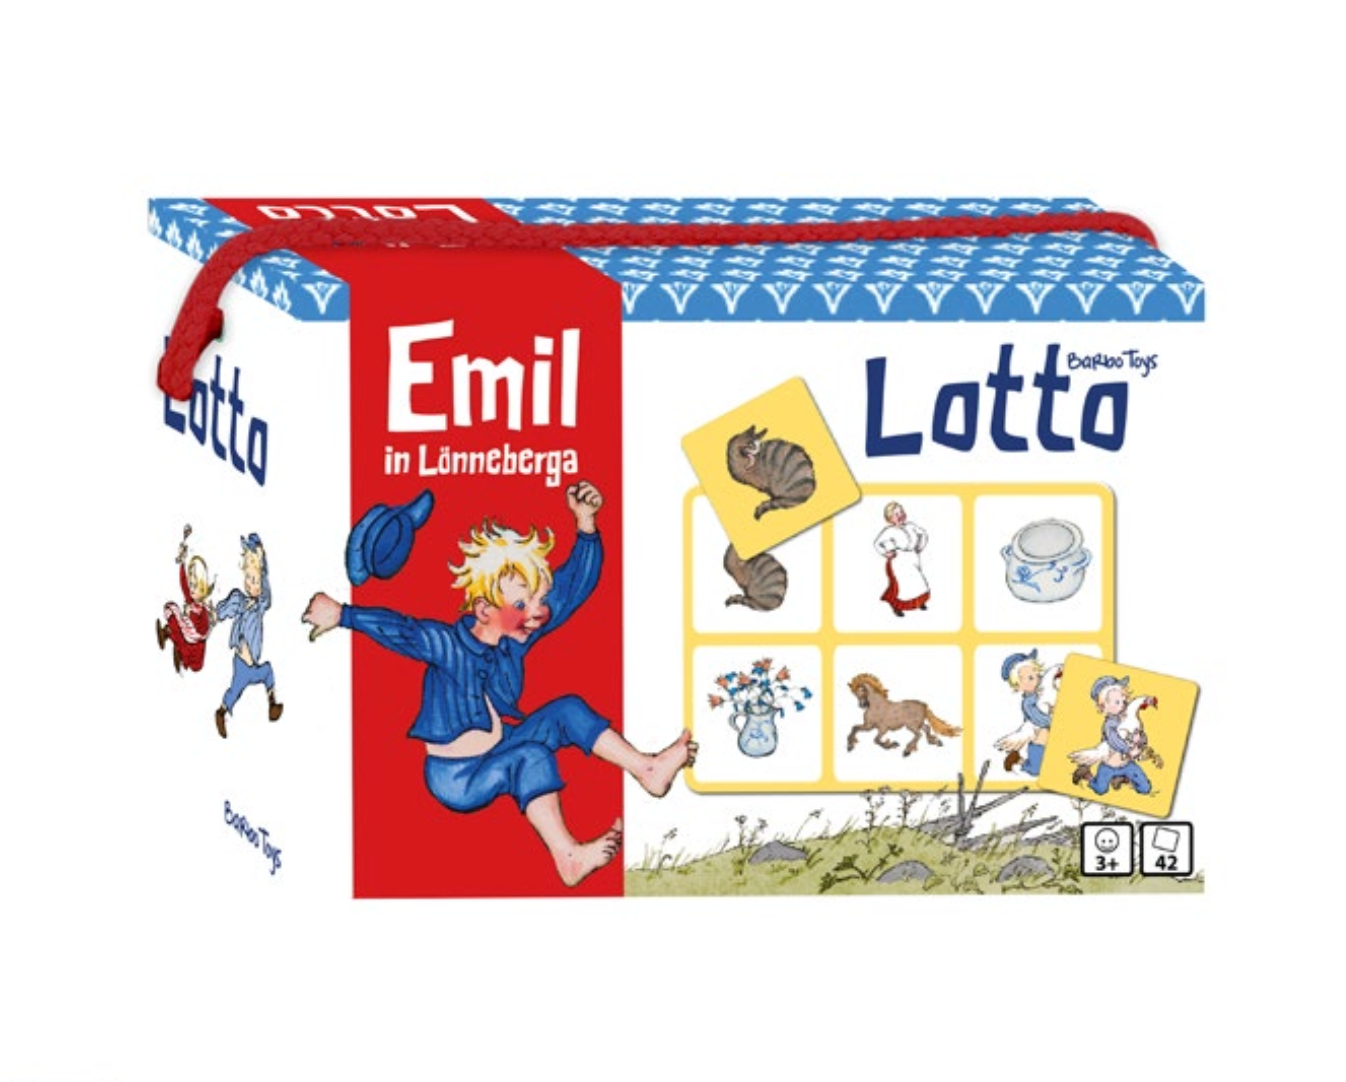 Emil Lotto